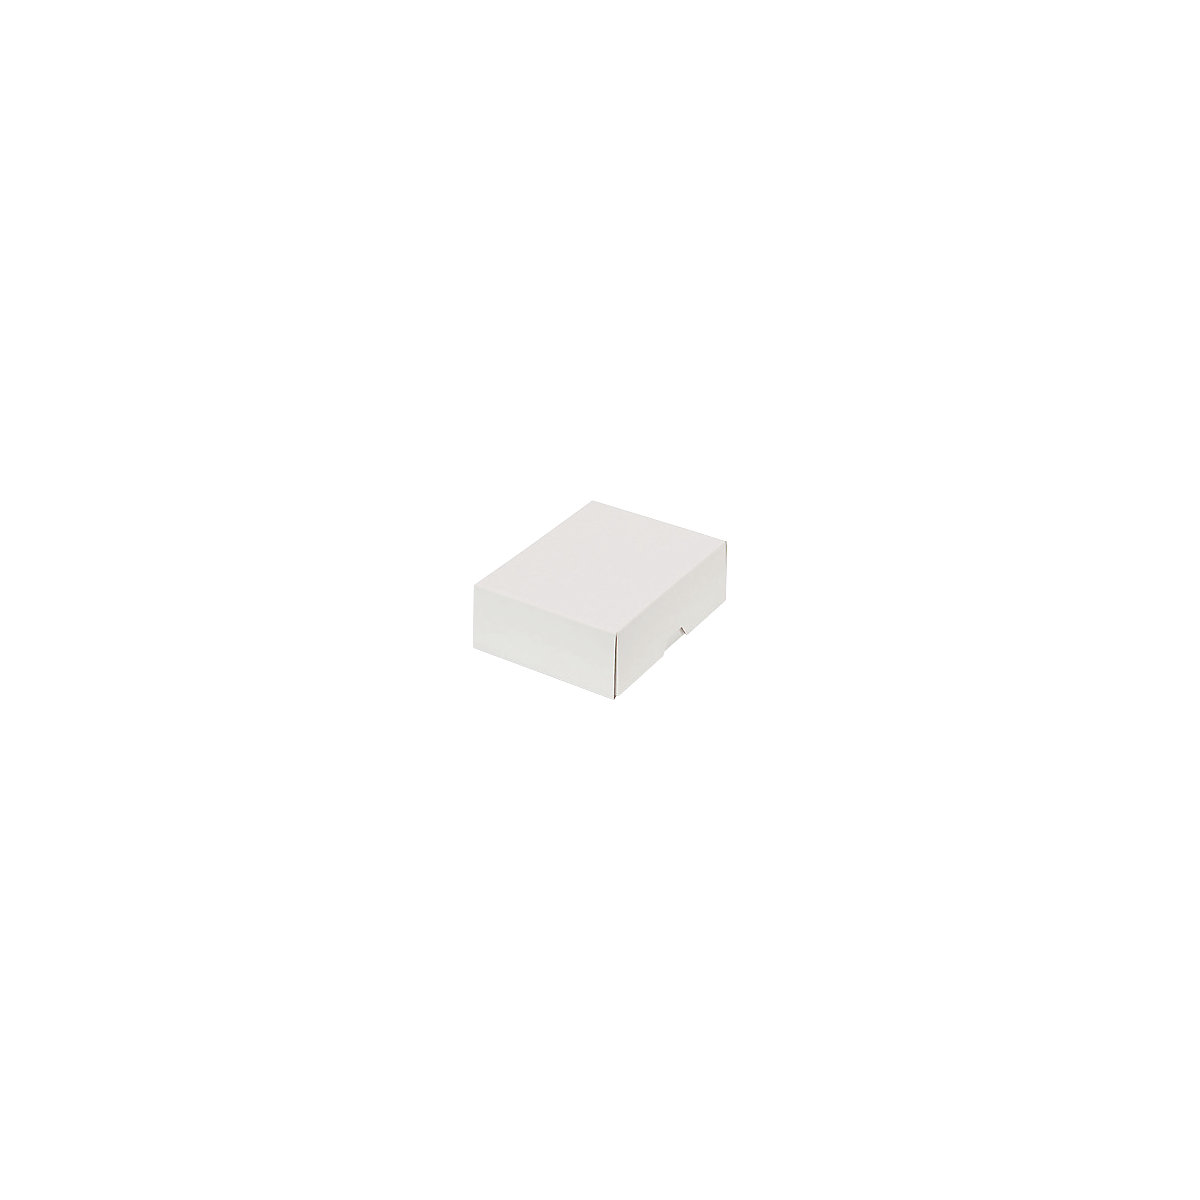 Stülpdeckelkarton, zweiteilig, Innenmaße 151 x 108 x 45 mm, A6, weiß, ab 500 Stk-44